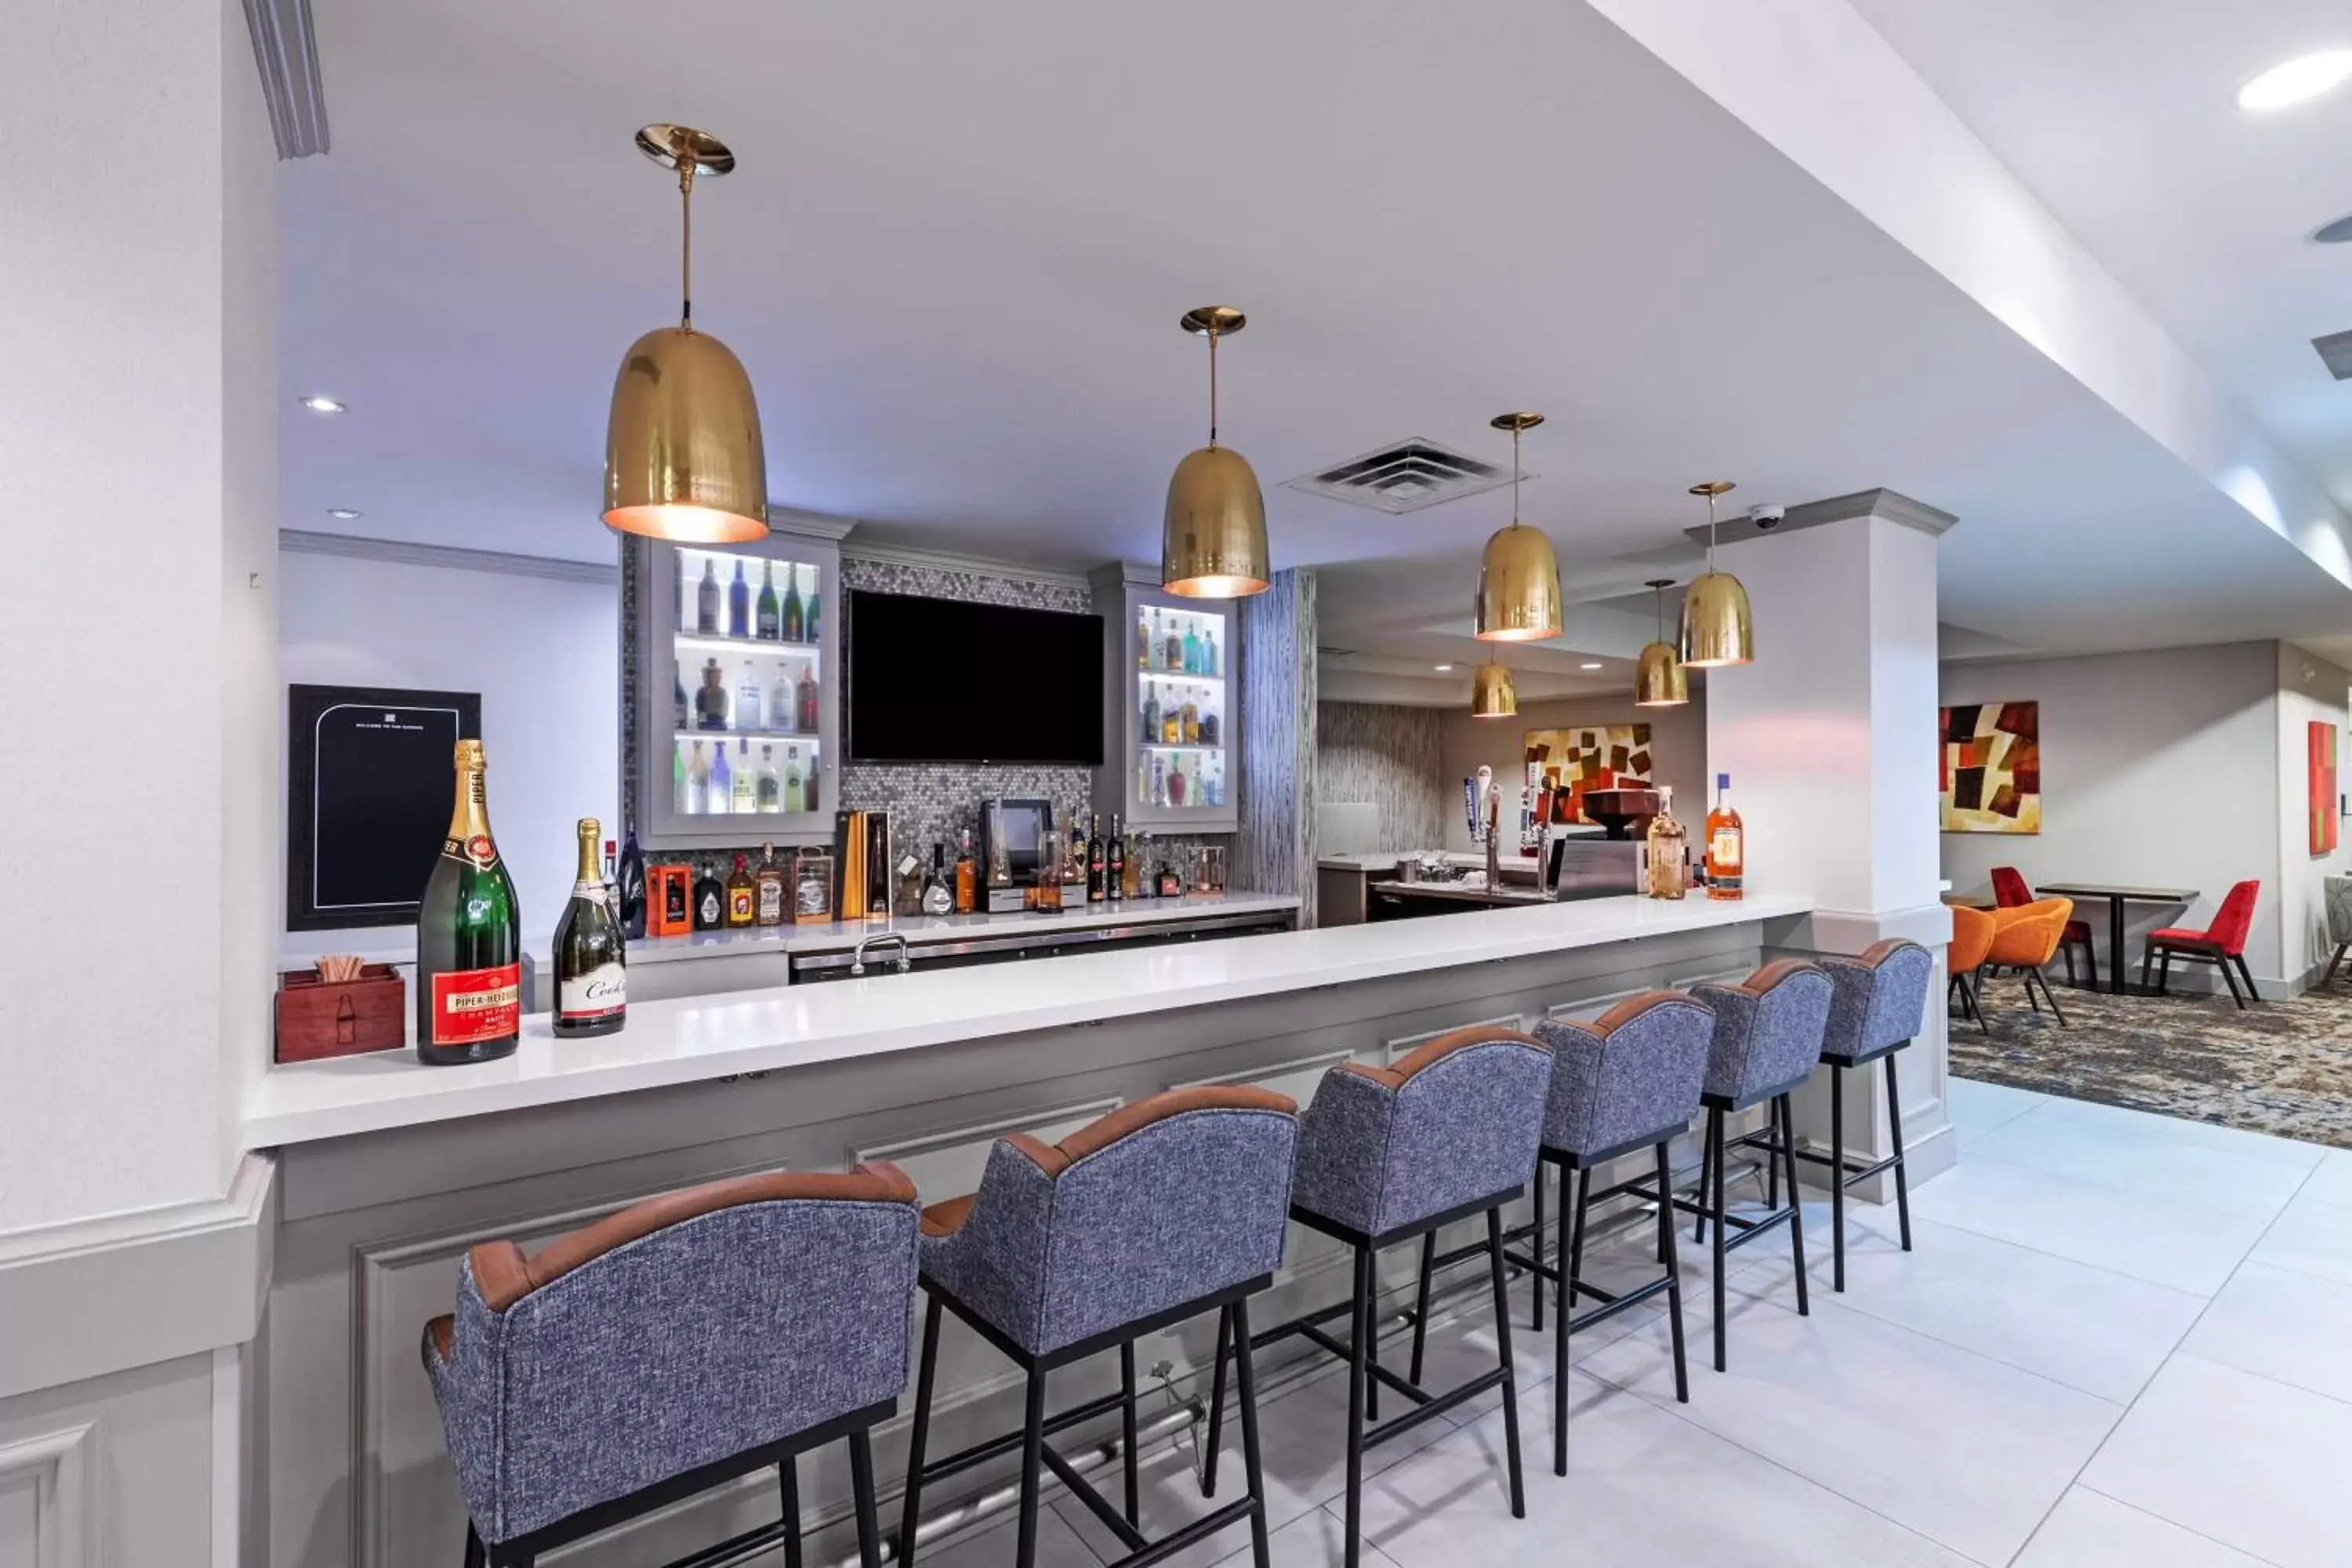 Lounge or bar, Lounge/Bar in Hilton Garden Inn Houston/Sugar Land